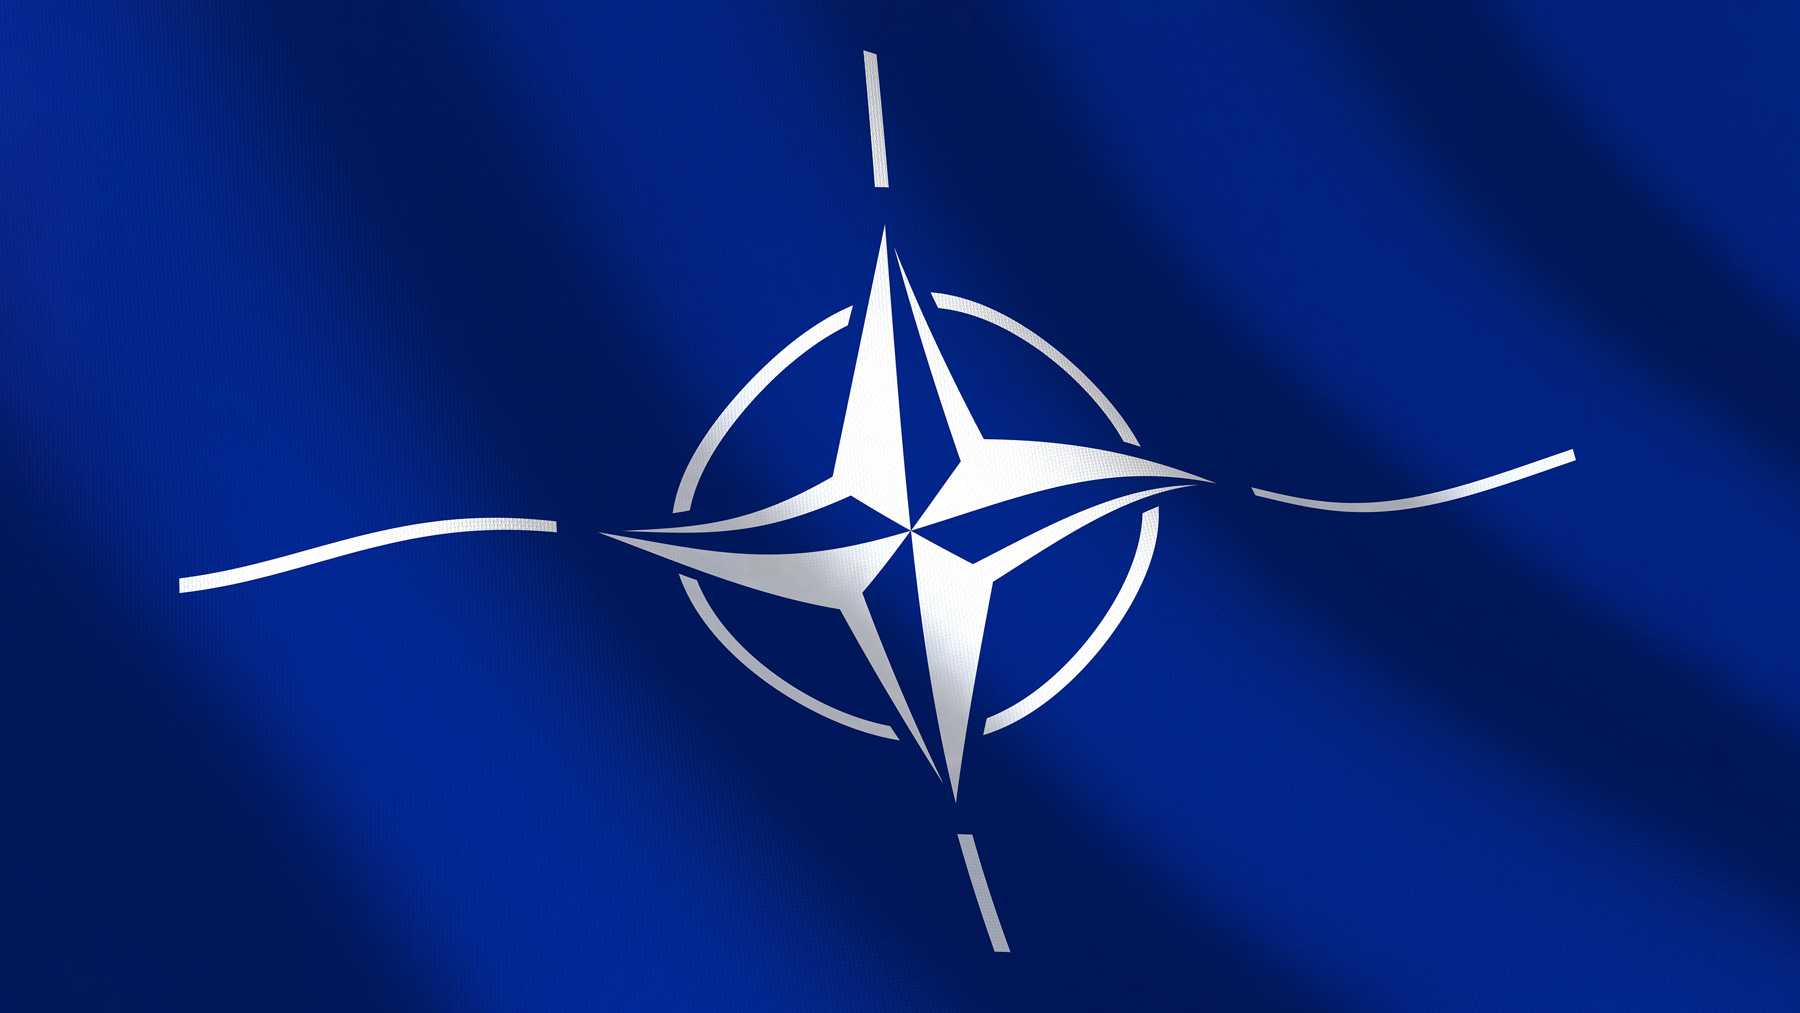 Представители республиканской партии в США отходят от поддержки НАТО